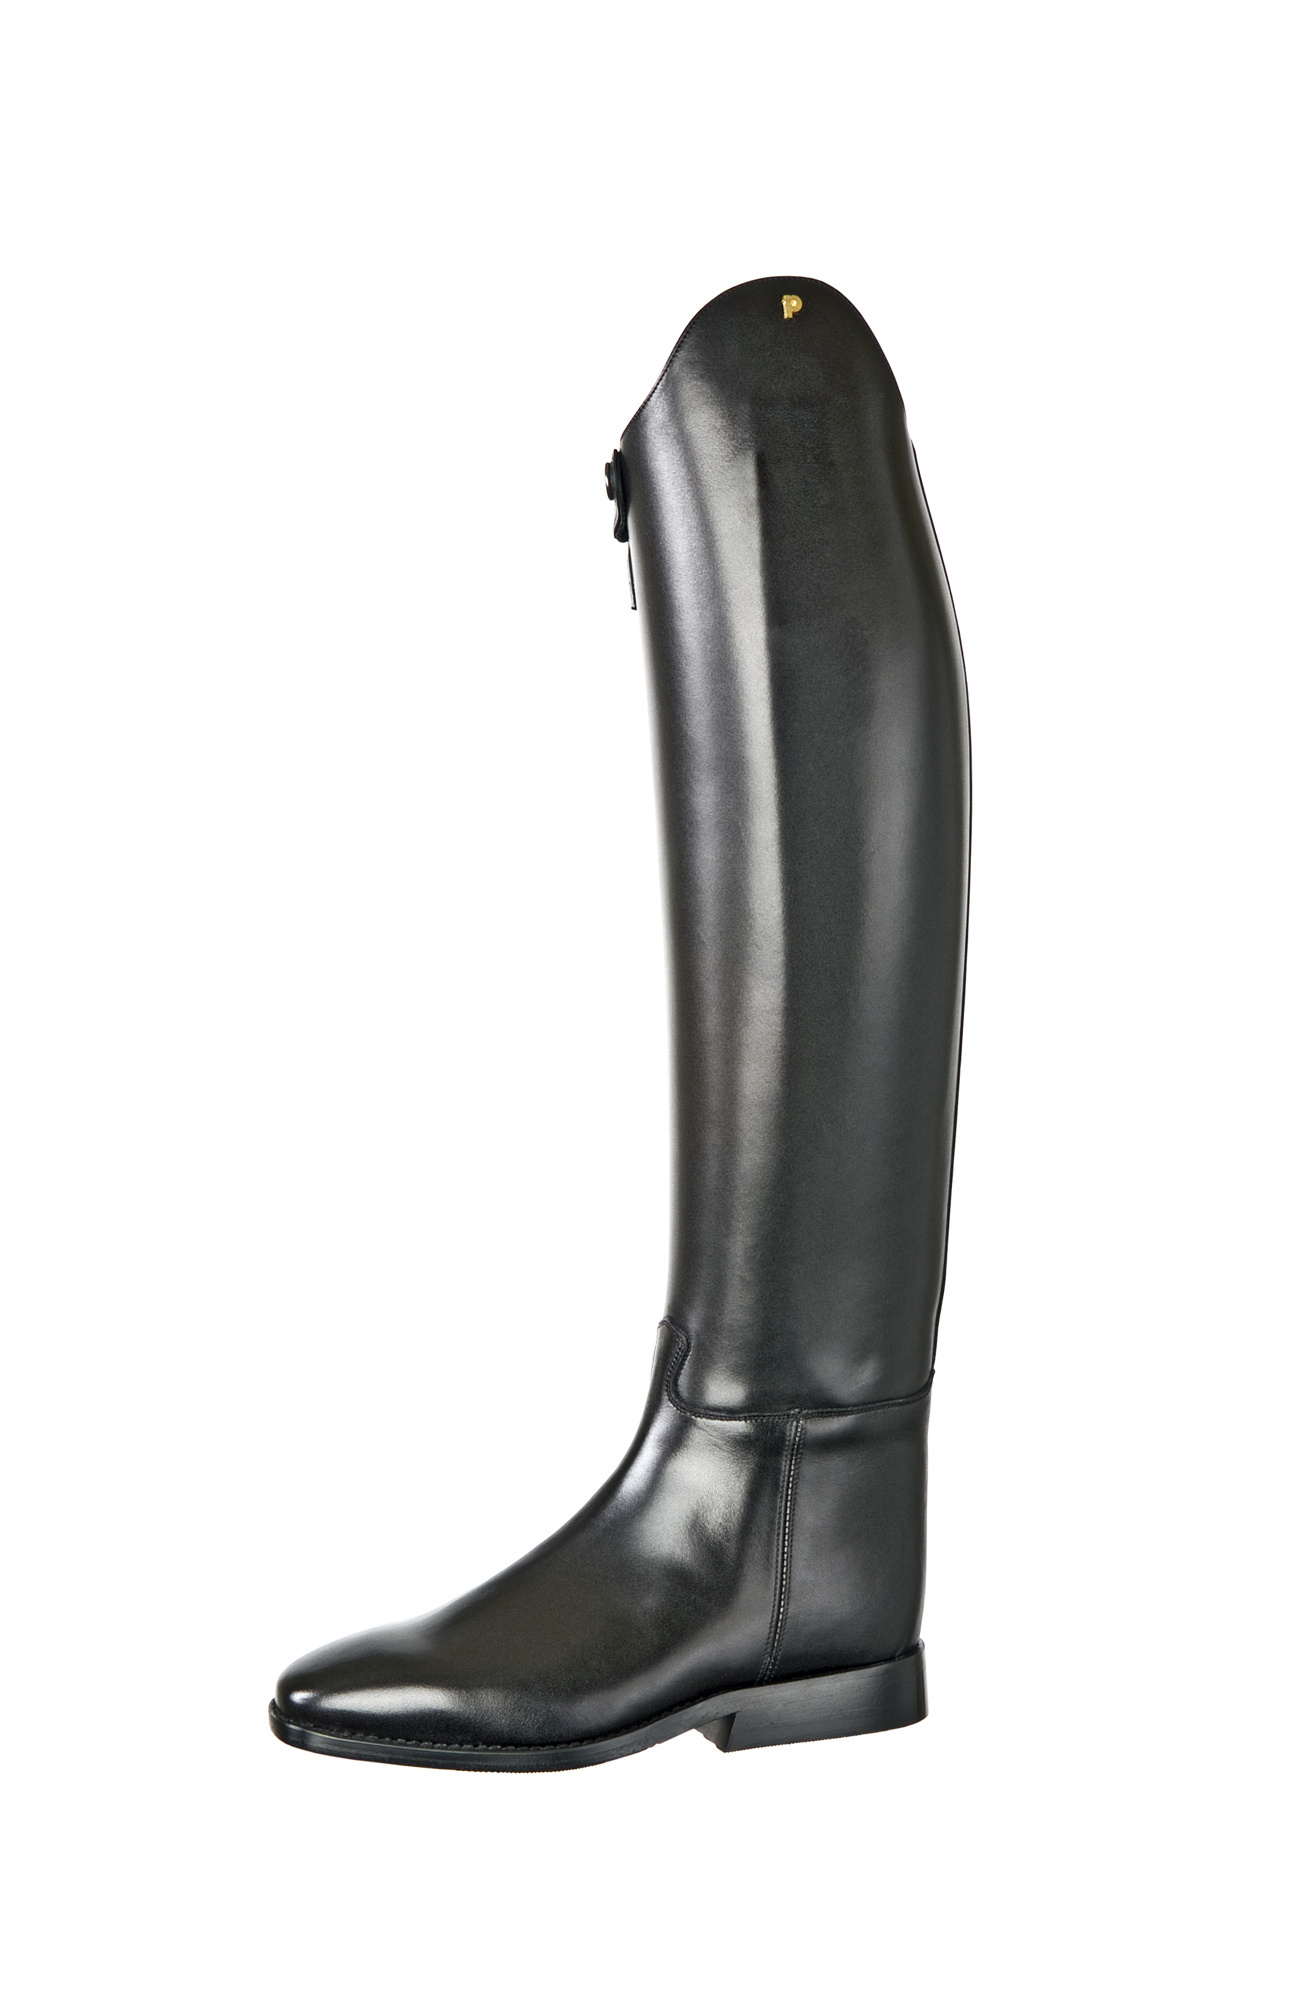 D375-5.0 Petrie Olympic Dressage black UK size 5.0 Series 10 XXHE - Van Huet Riding boots